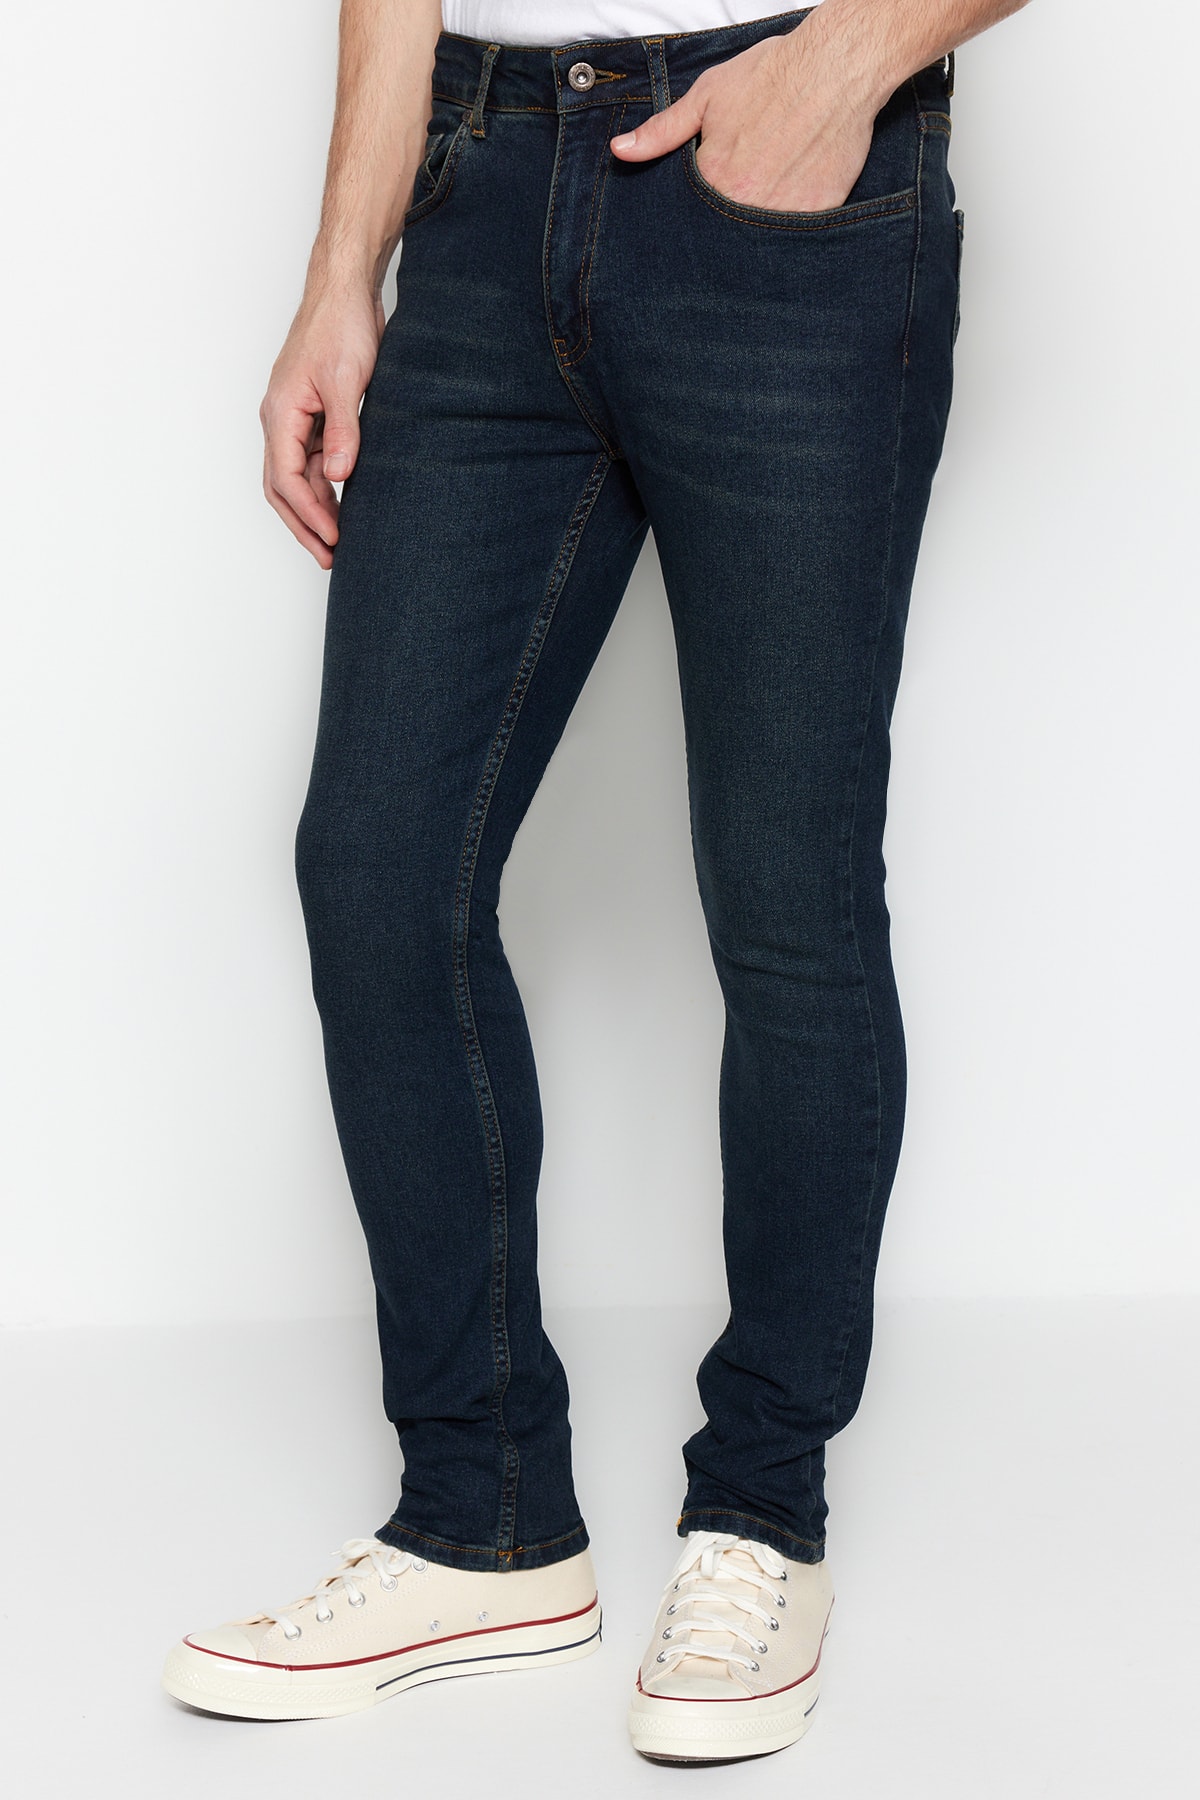 джинсы скинни размер 44 синий Джинсы Trendyol скинни, темно-синий